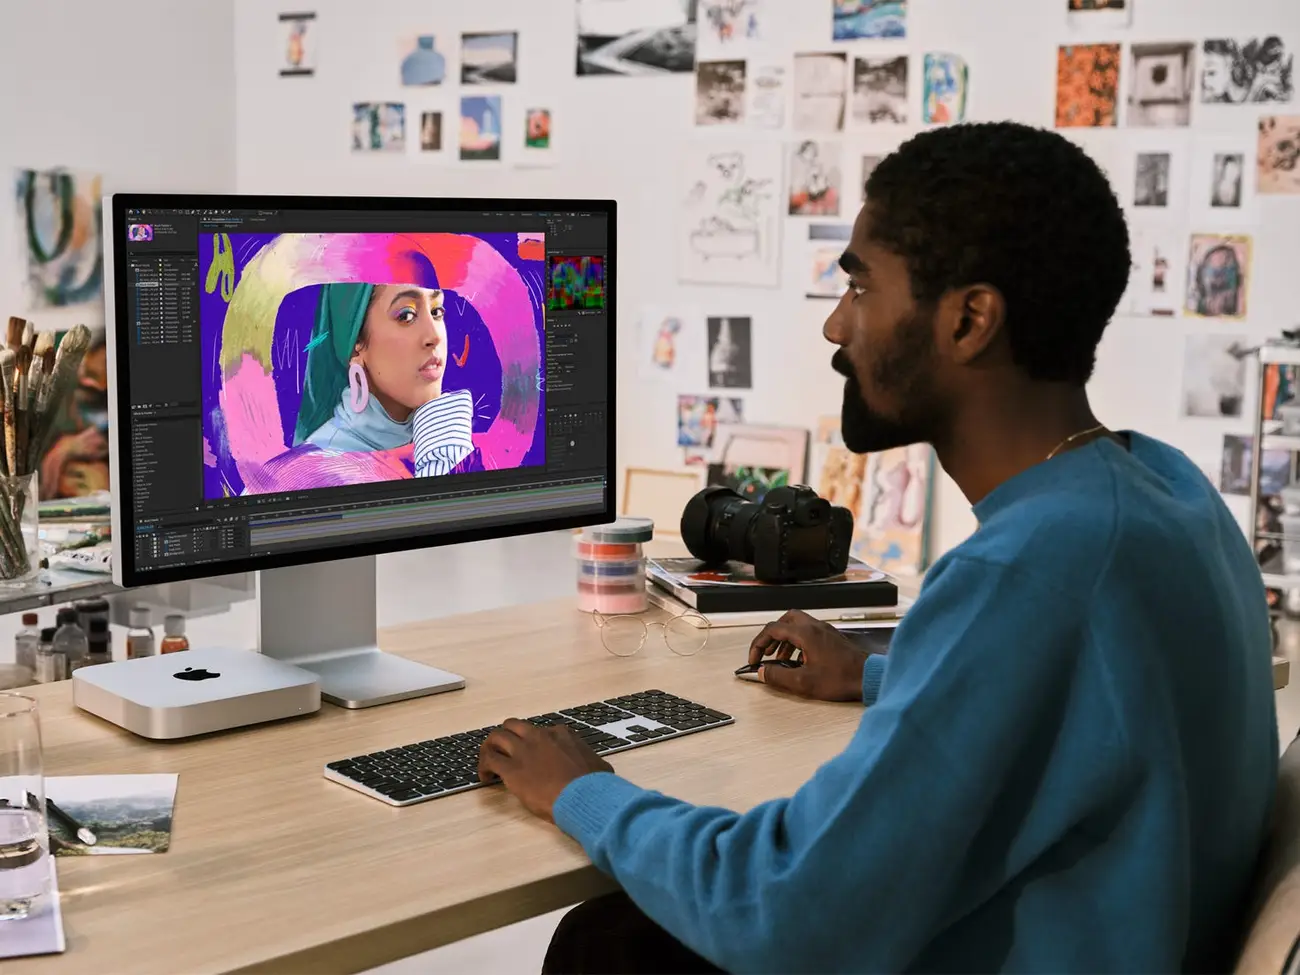 Mac Mini mới nhất của Apple đi kèm với bộ xử lý nhanh hơn và giá khởi điểm thấp hơn - và đây là cách đặt hàng trước